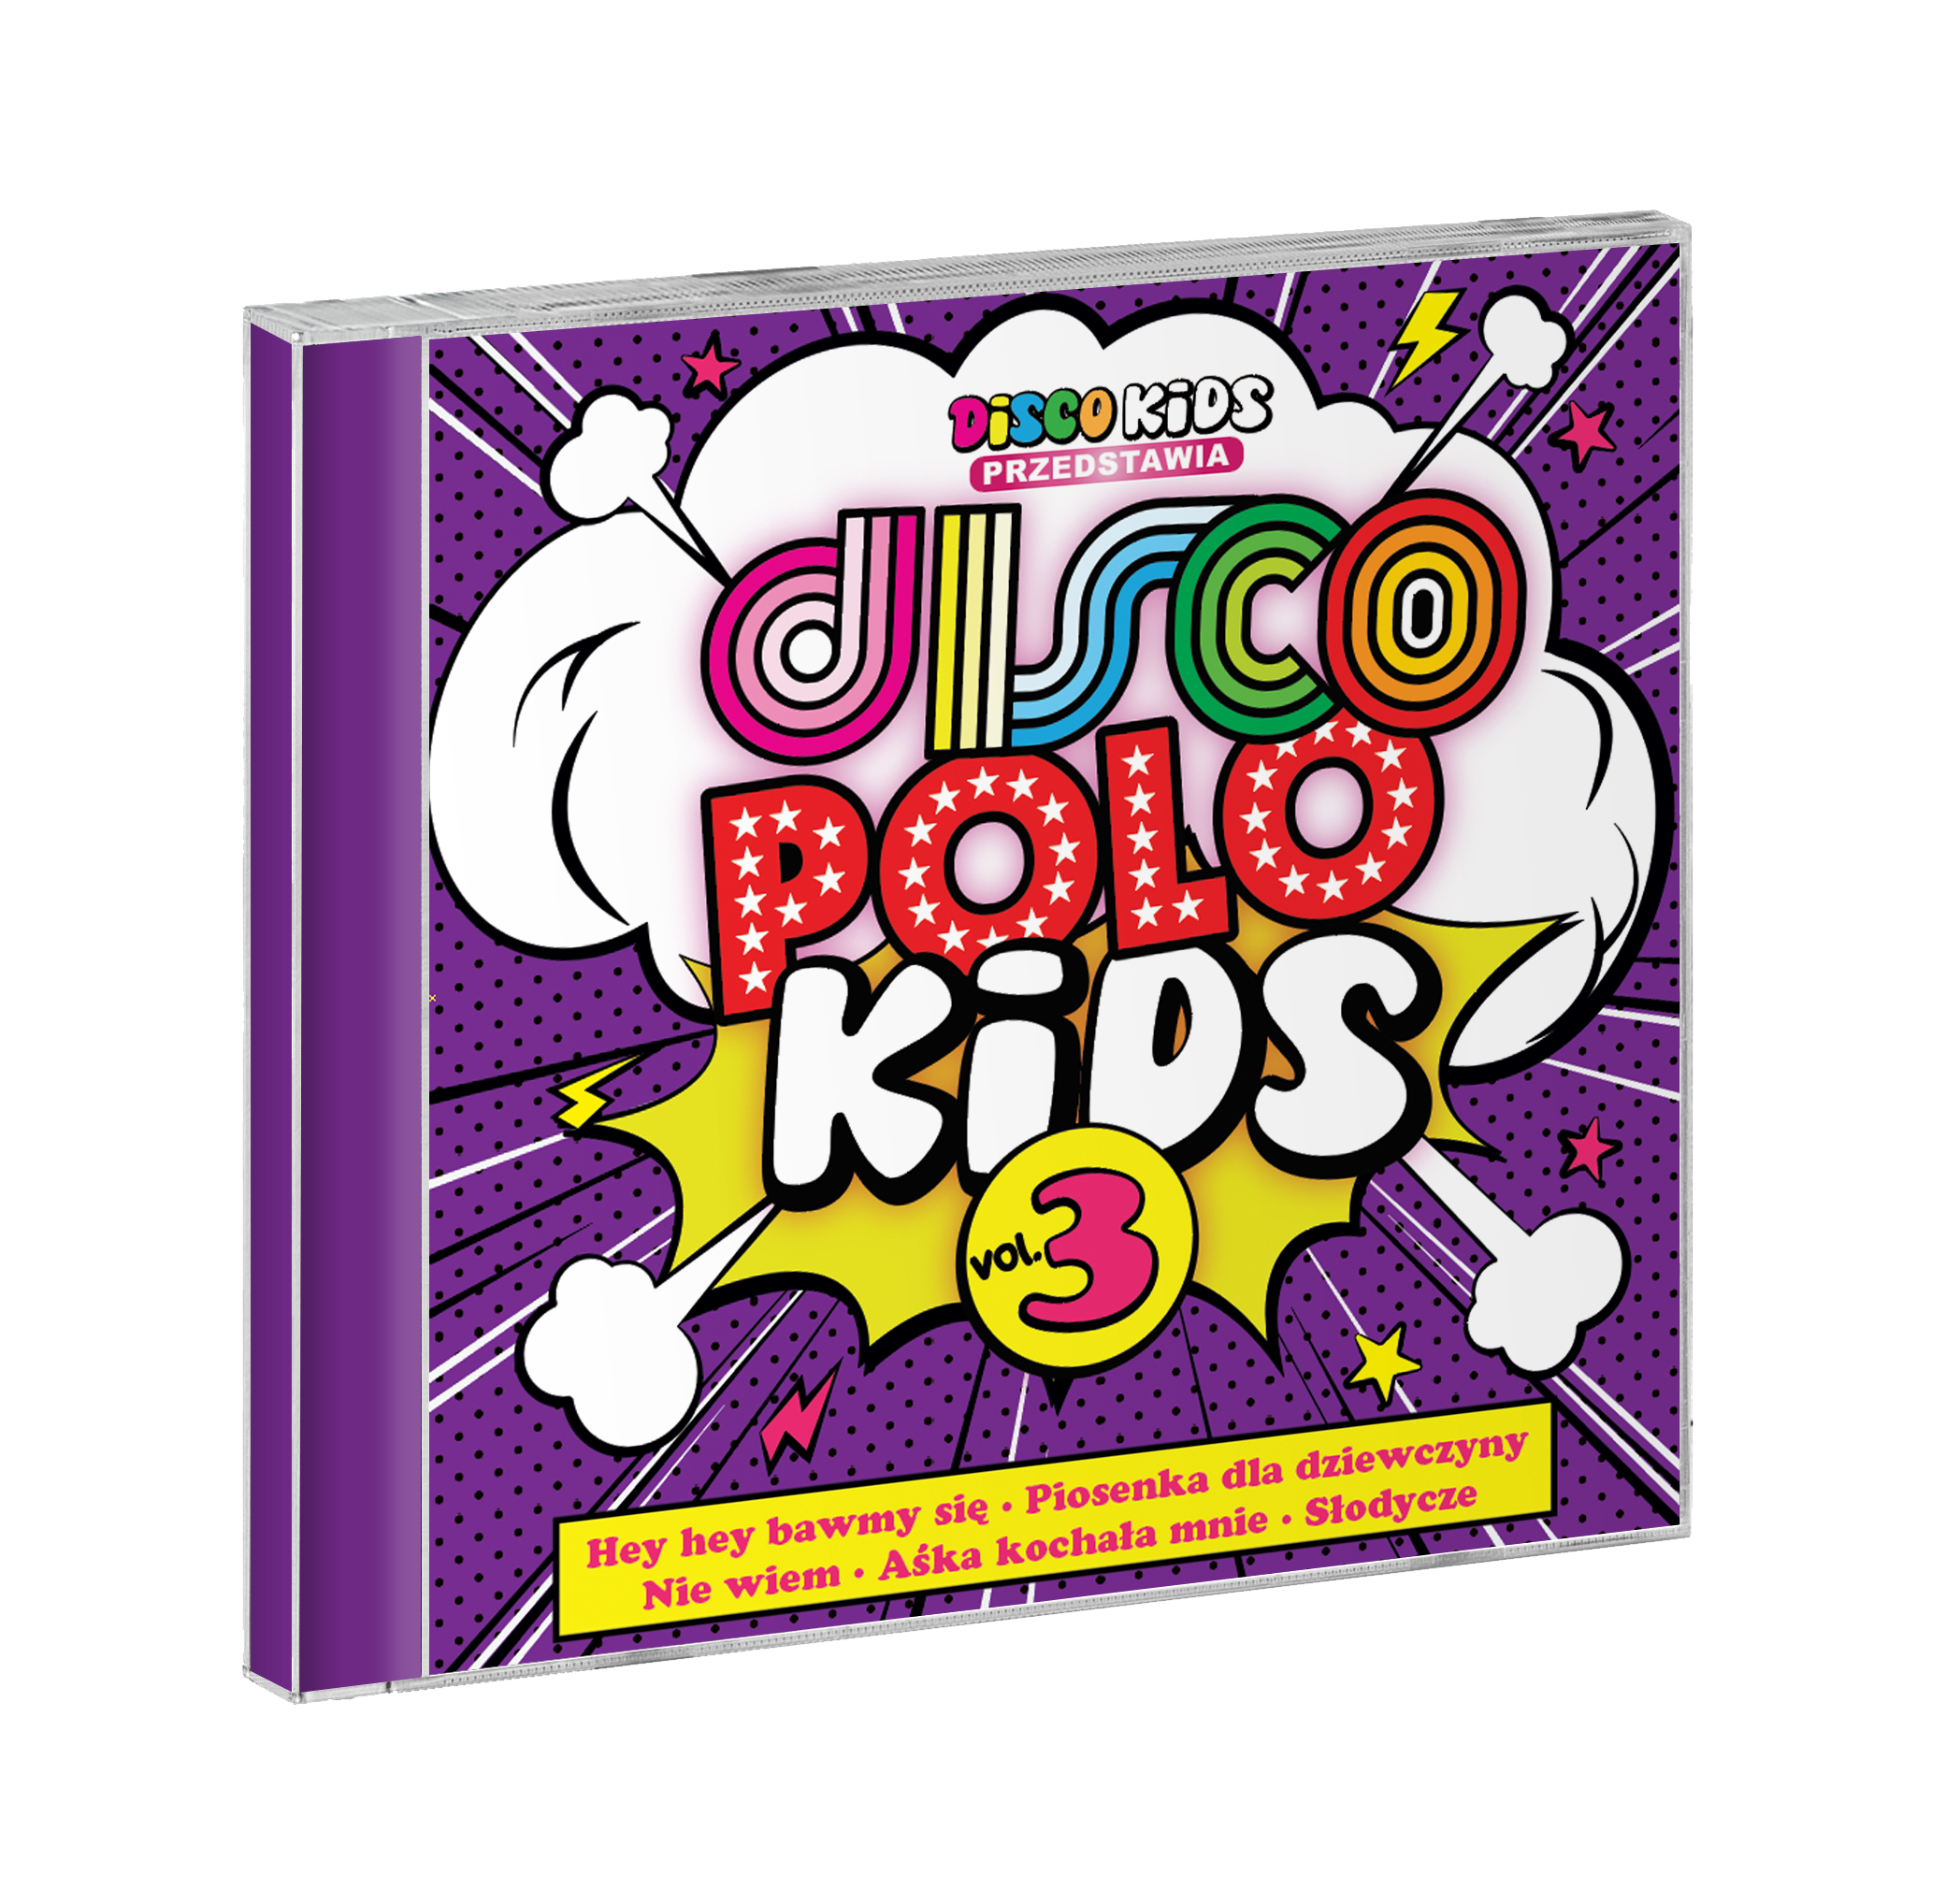 Płyta Disco Polo Kids vol.3 już dostępna!